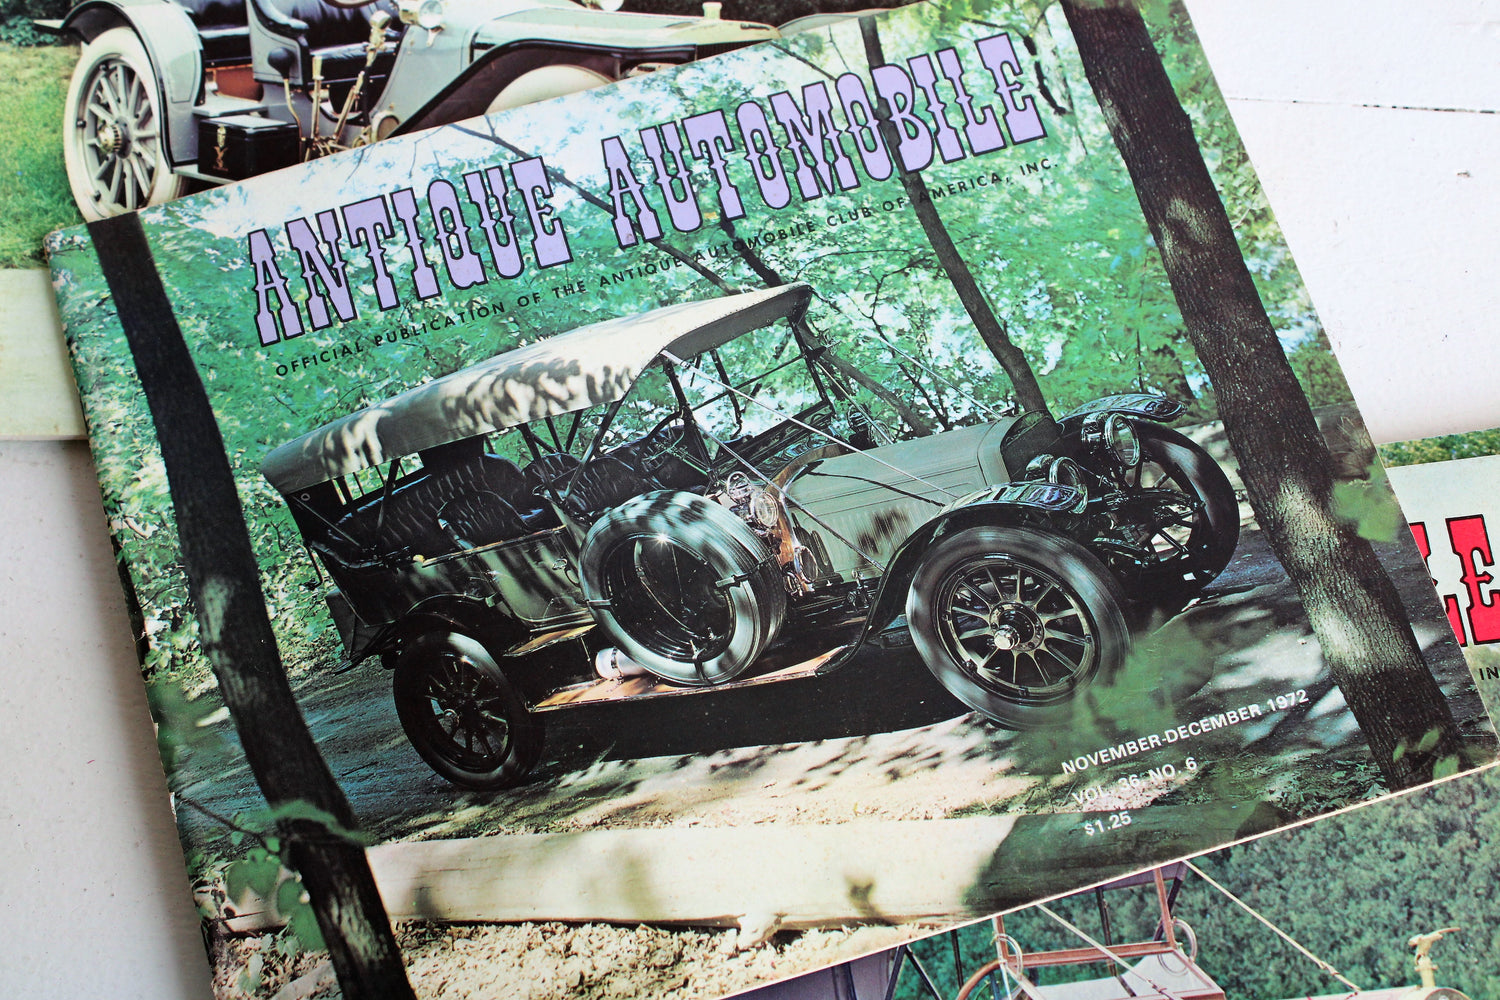 Vintage 1970s Lot of Six Antique Automobile Magazines